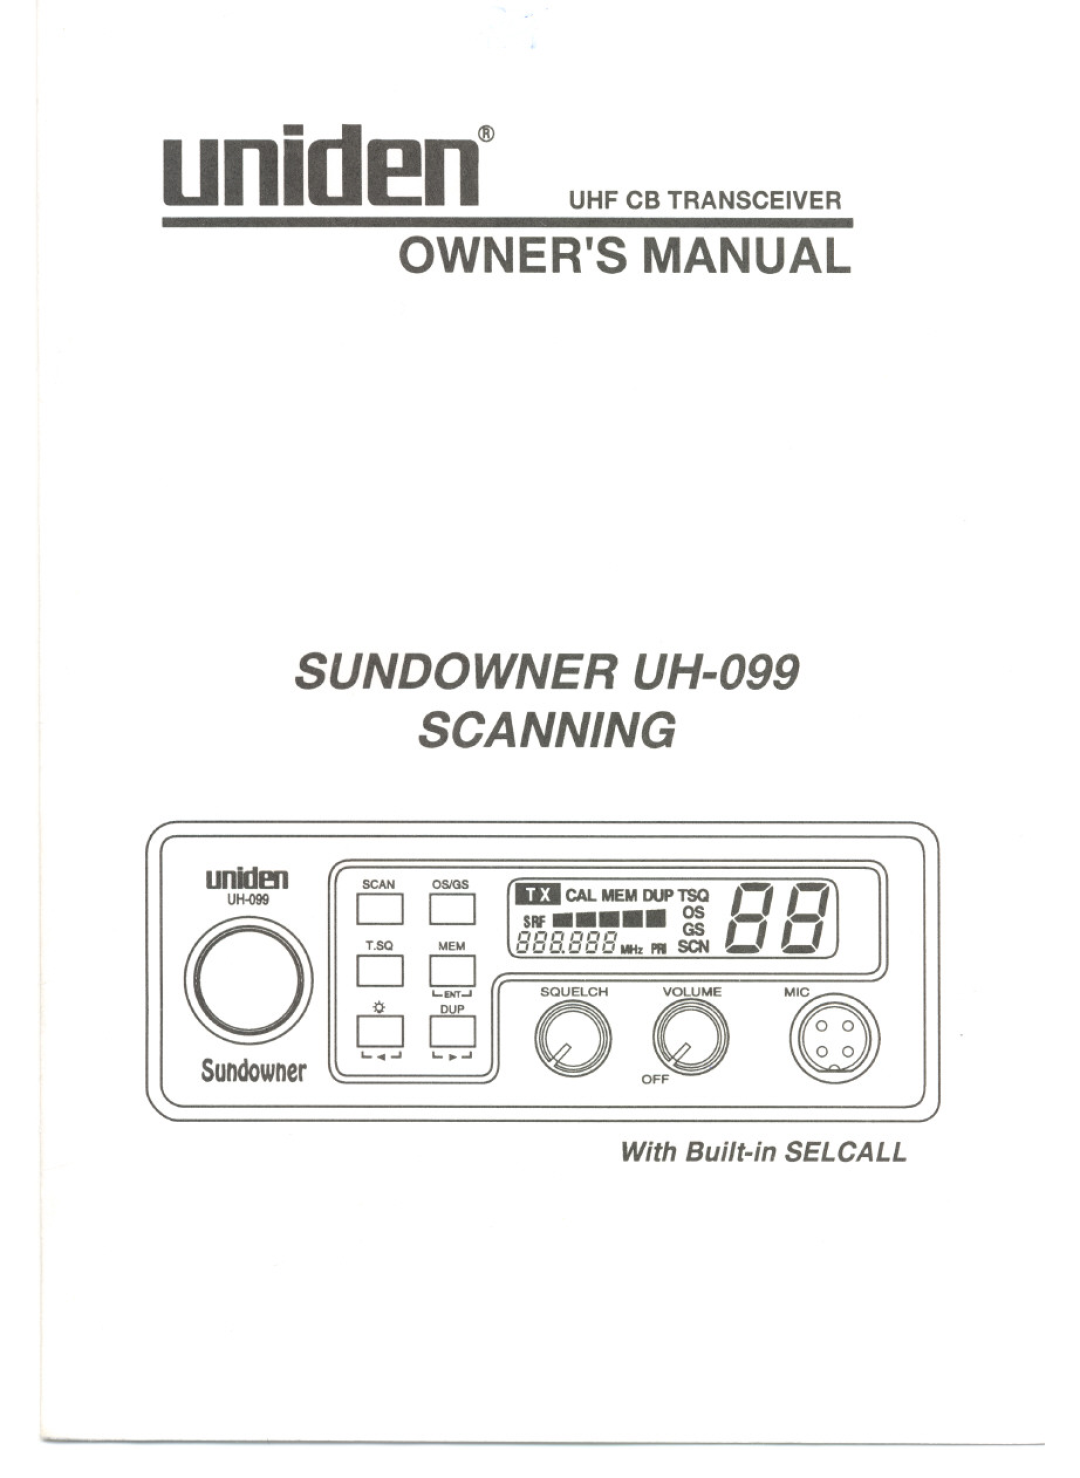 Uniden UH-099 owner manual SUNDOWNER UH-O99 SCANNING, aDD, SCN, unldm, unidE!n$UHF CB TRANSCEIVER, S un downer, rj,, GS 